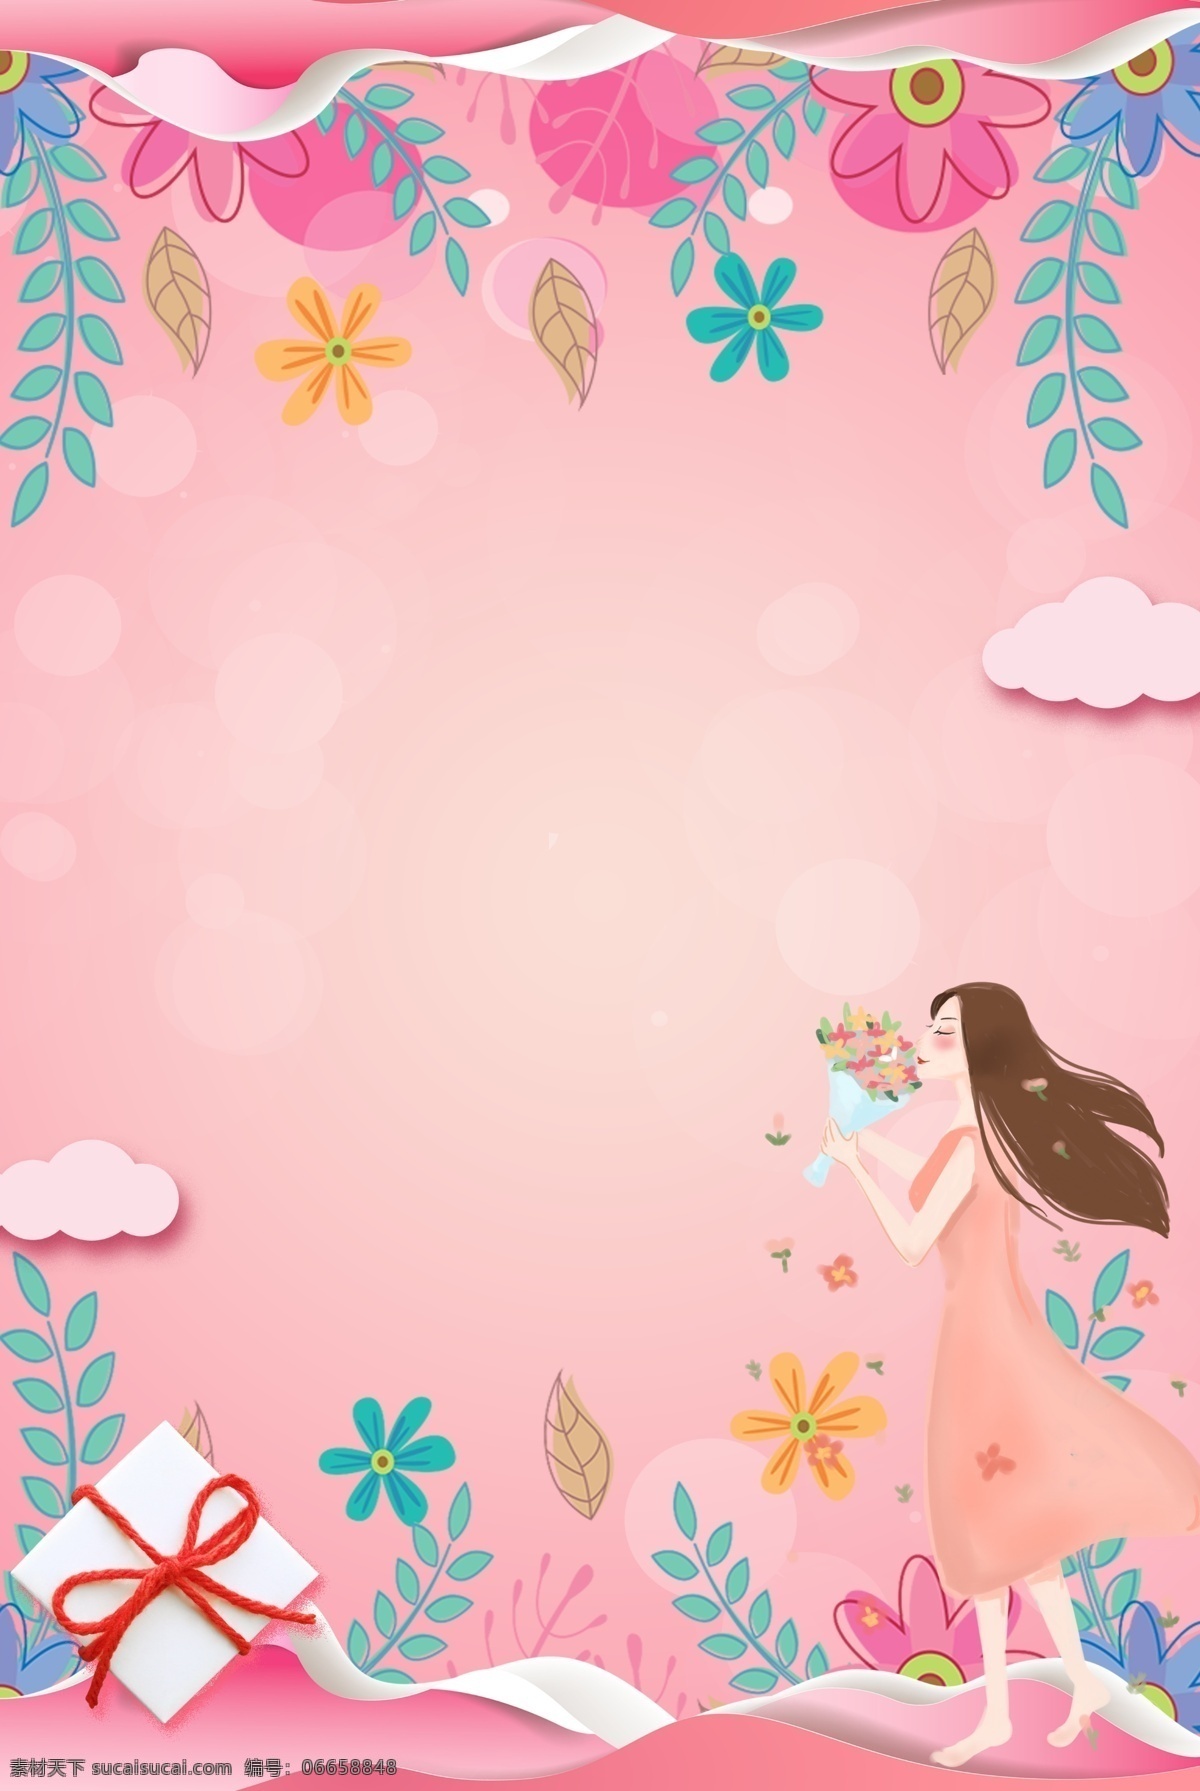 简约 花卉 女神 节 合成 背景 女神节 女生节 妇女节 花朵 粉色 唯美 花瓣 创意